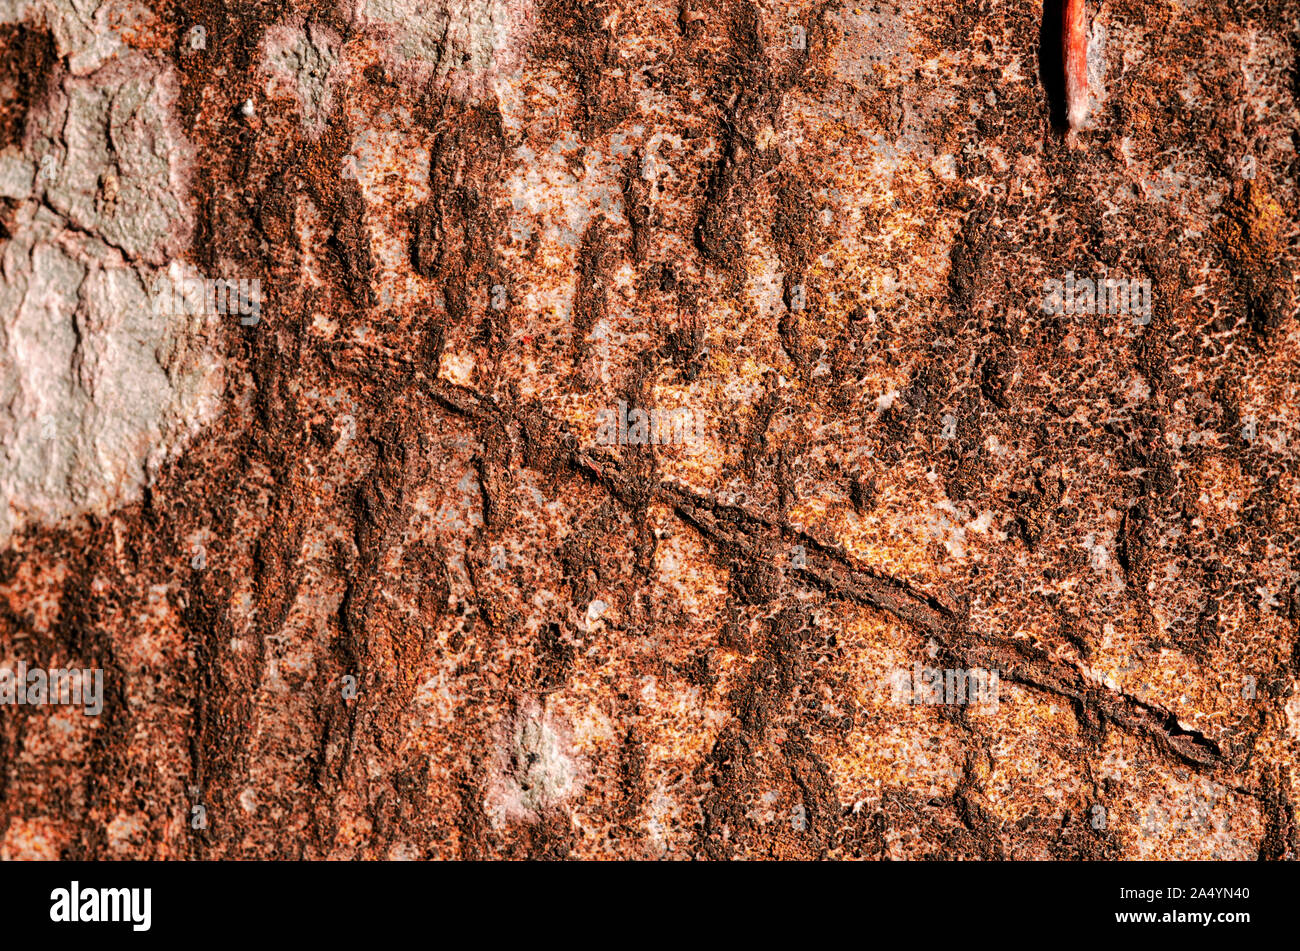 Version horizontale d'un Beech tree bark close up avec des cicatrices, des fissures, et tous ses détails de surface spécifiques. La lumière naturelle dans des tons bruns Banque D'Images